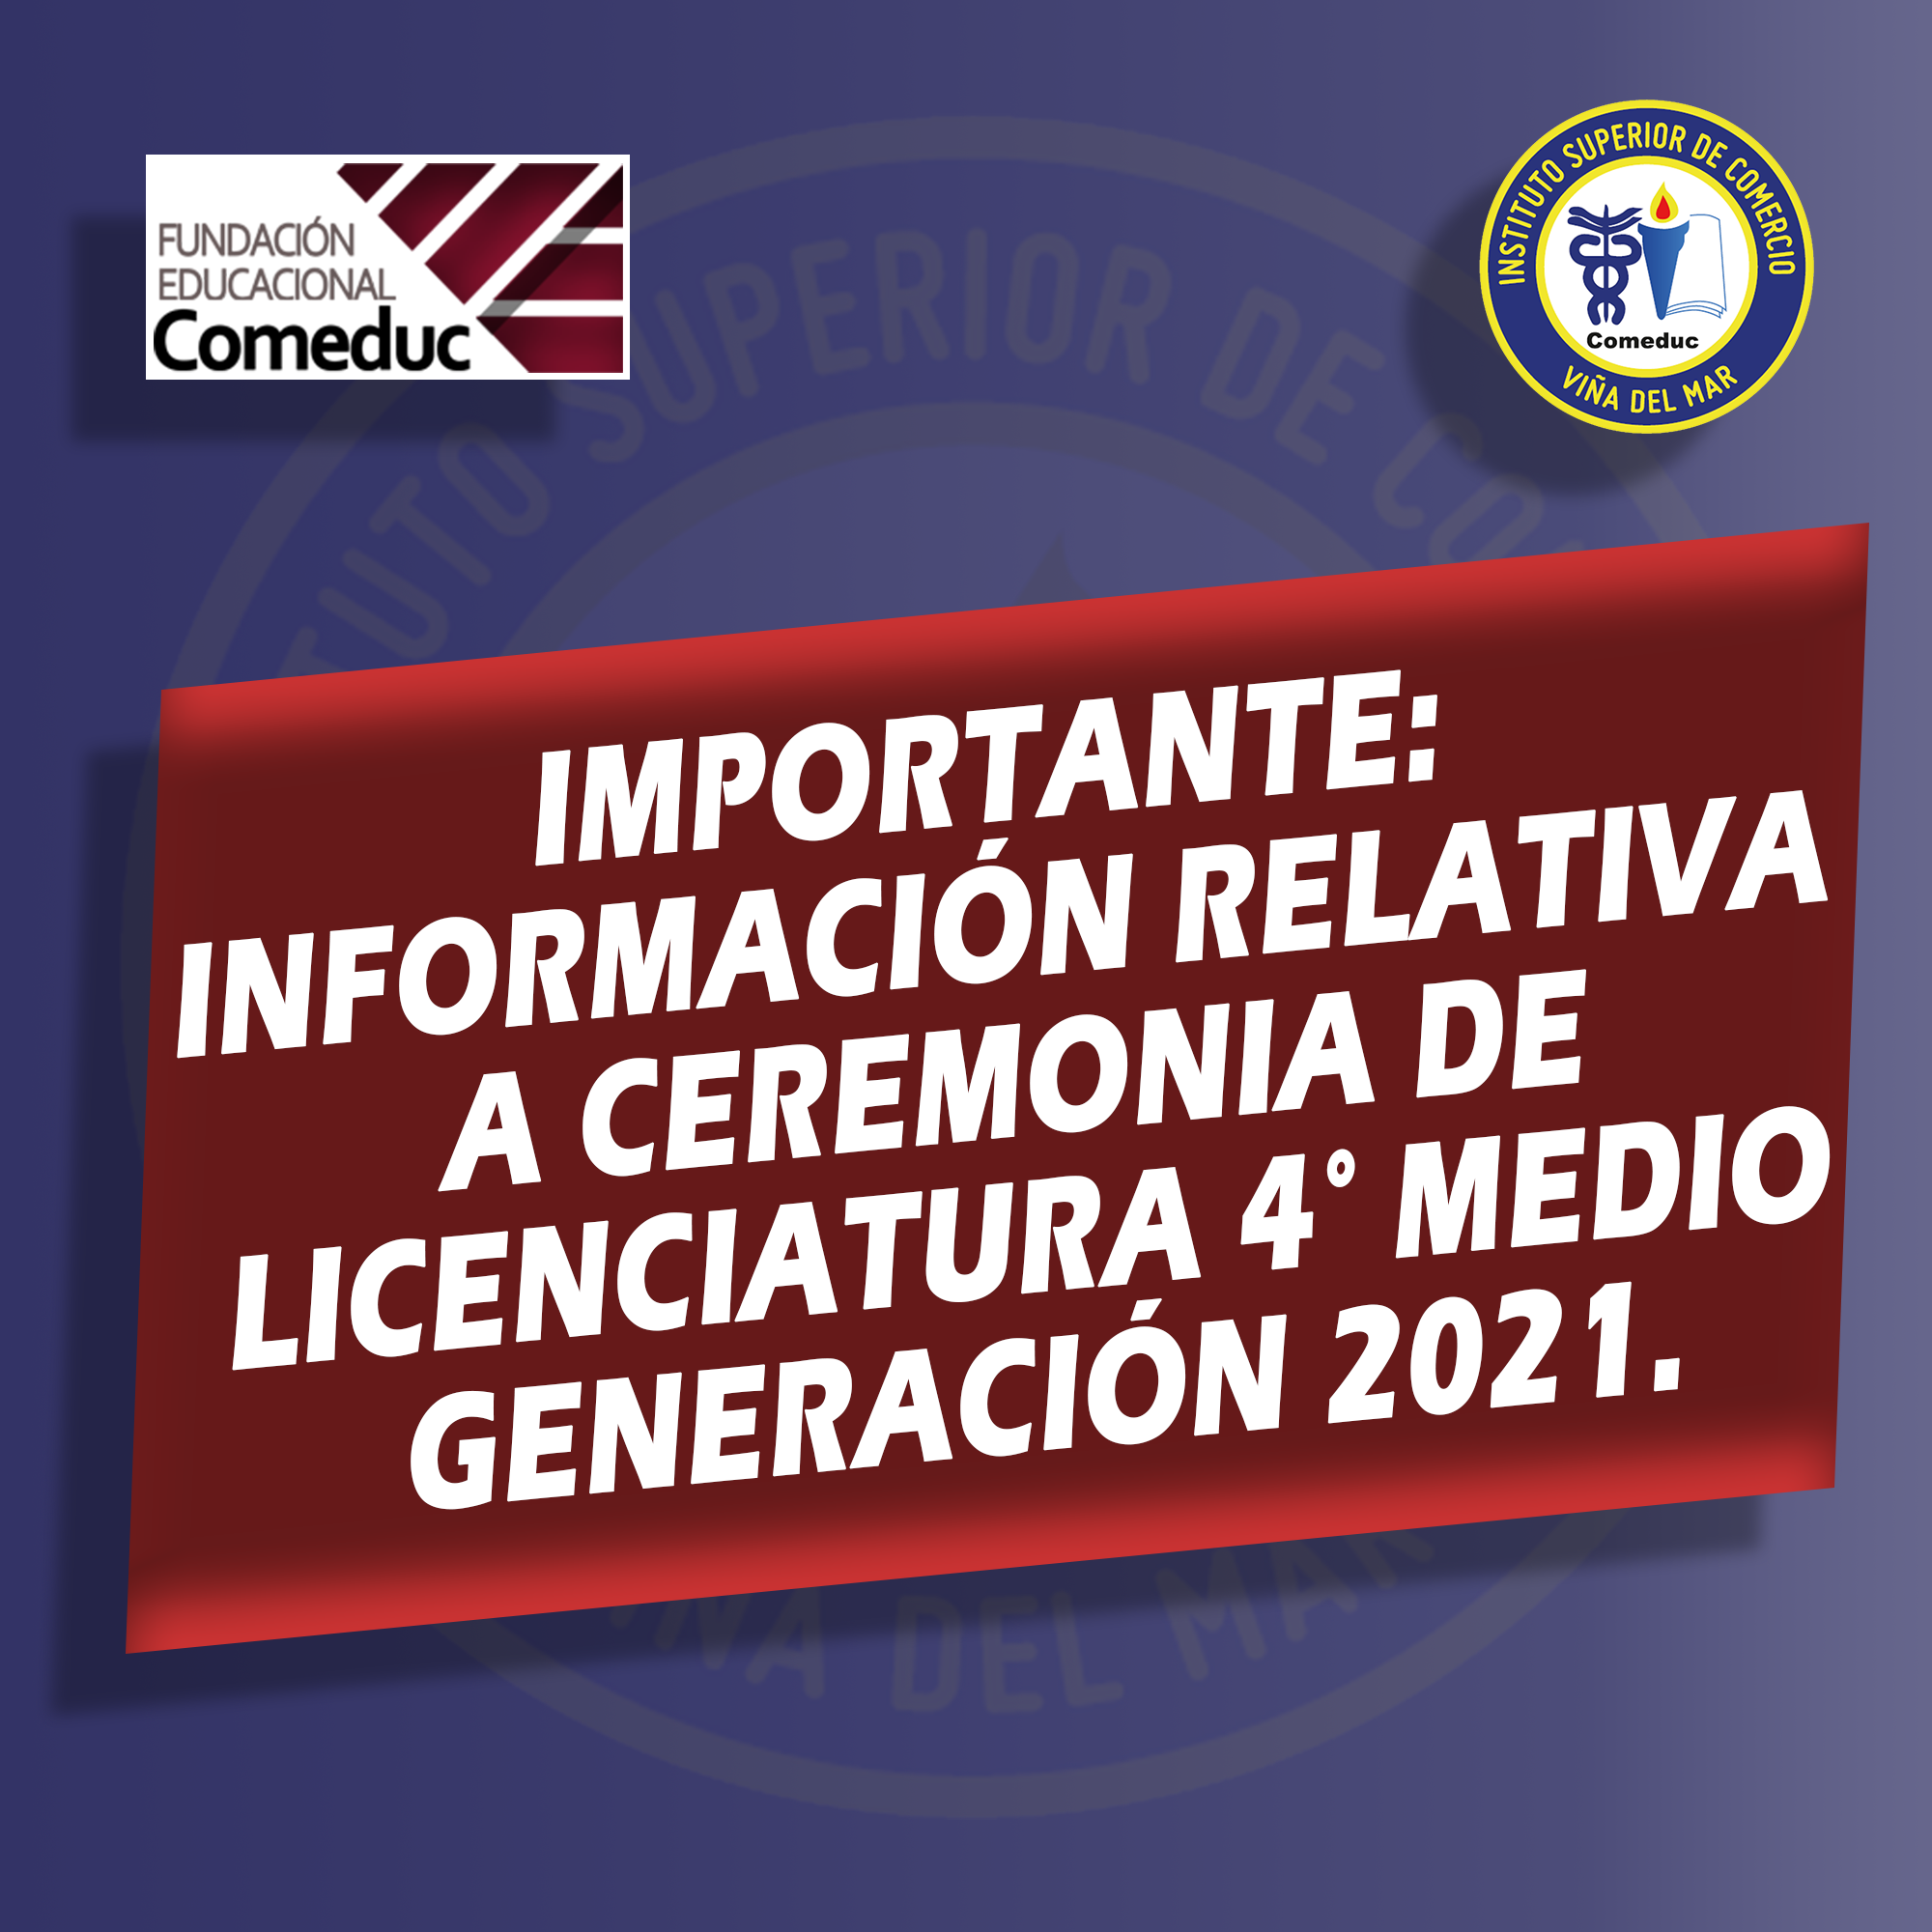 IMPORTANTE: CEREMONIA DE LICENCIATURA 4° MEDIO GENERACIÓN 2021